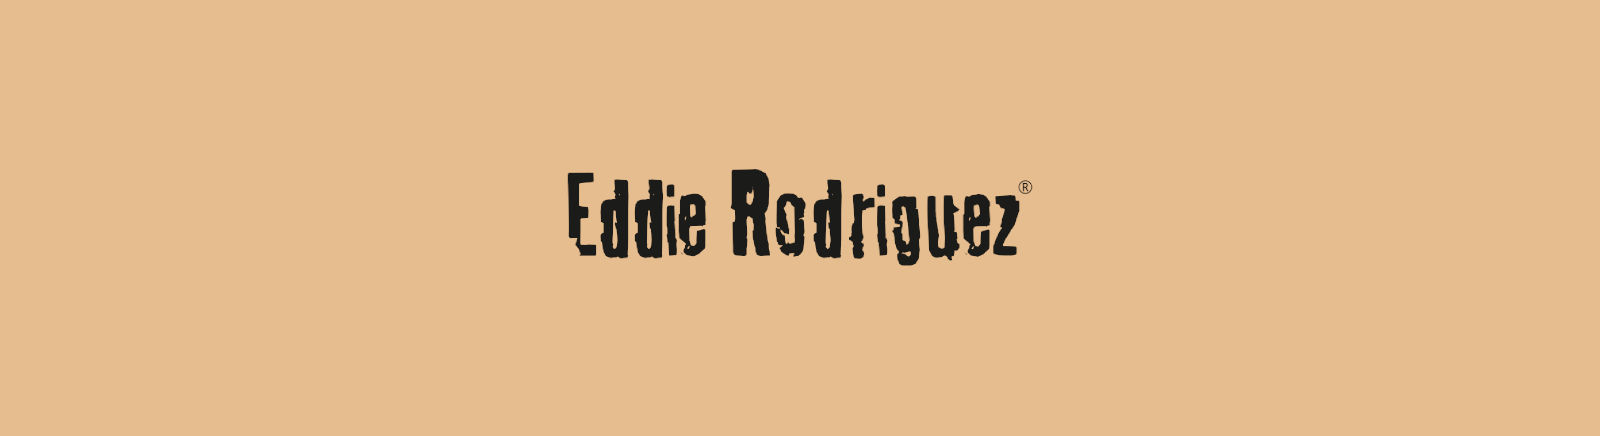 Prange: Eddie Rodriguez Schnürschuhe für Damen online shoppen